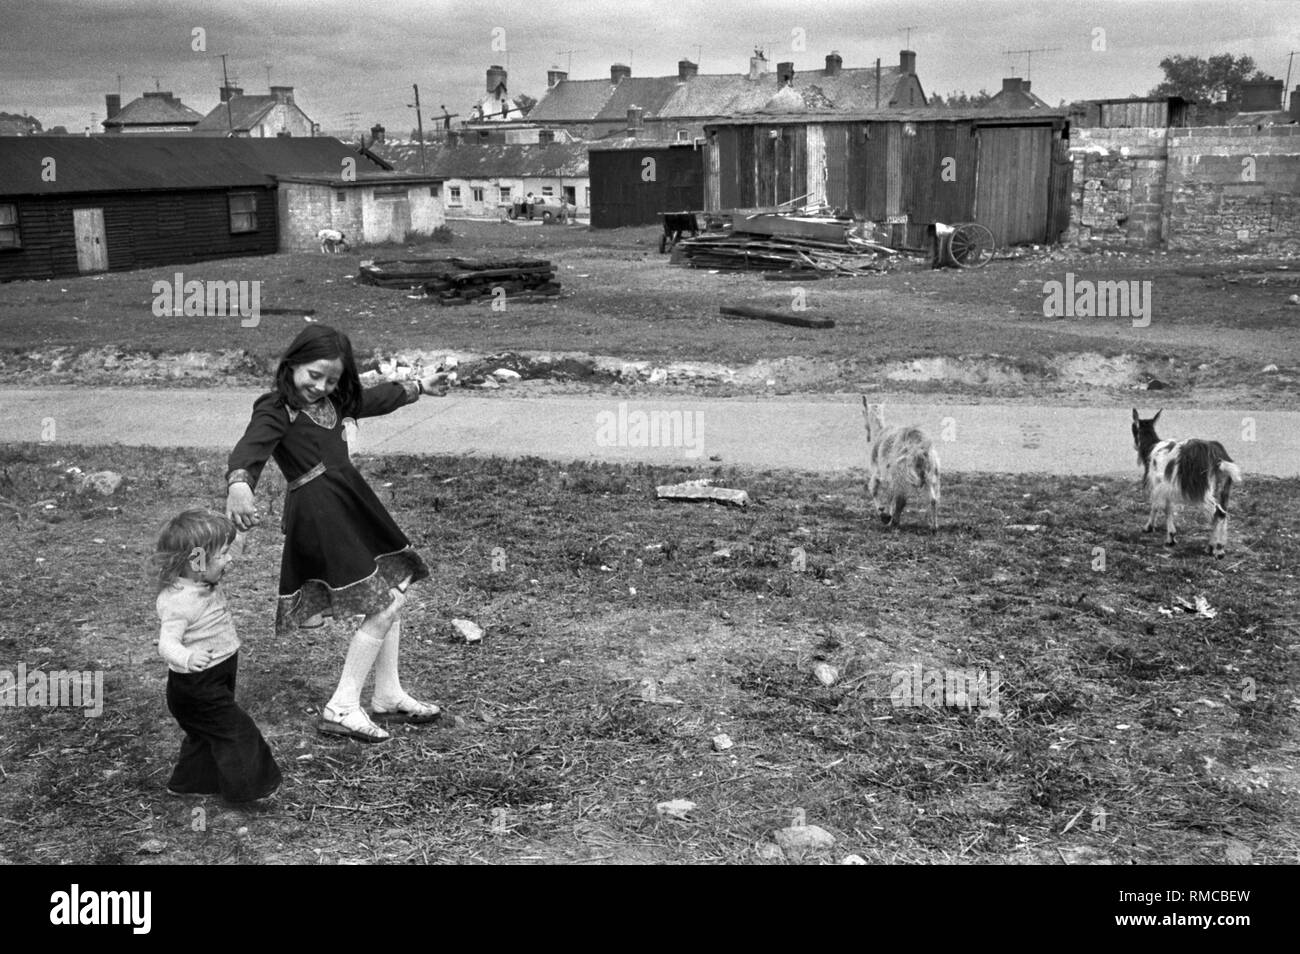 Adolescente irlandaise des années 1970 avec sœur jouant à l'extérieur de Limerick, dans le comté de Limerick, Eire. Chèvres bétail laissé à errer, ils ne sont pas écrus. Côte ouest de l'Irlande du Sud des années 70 HOMER SYKES Banque D'Images